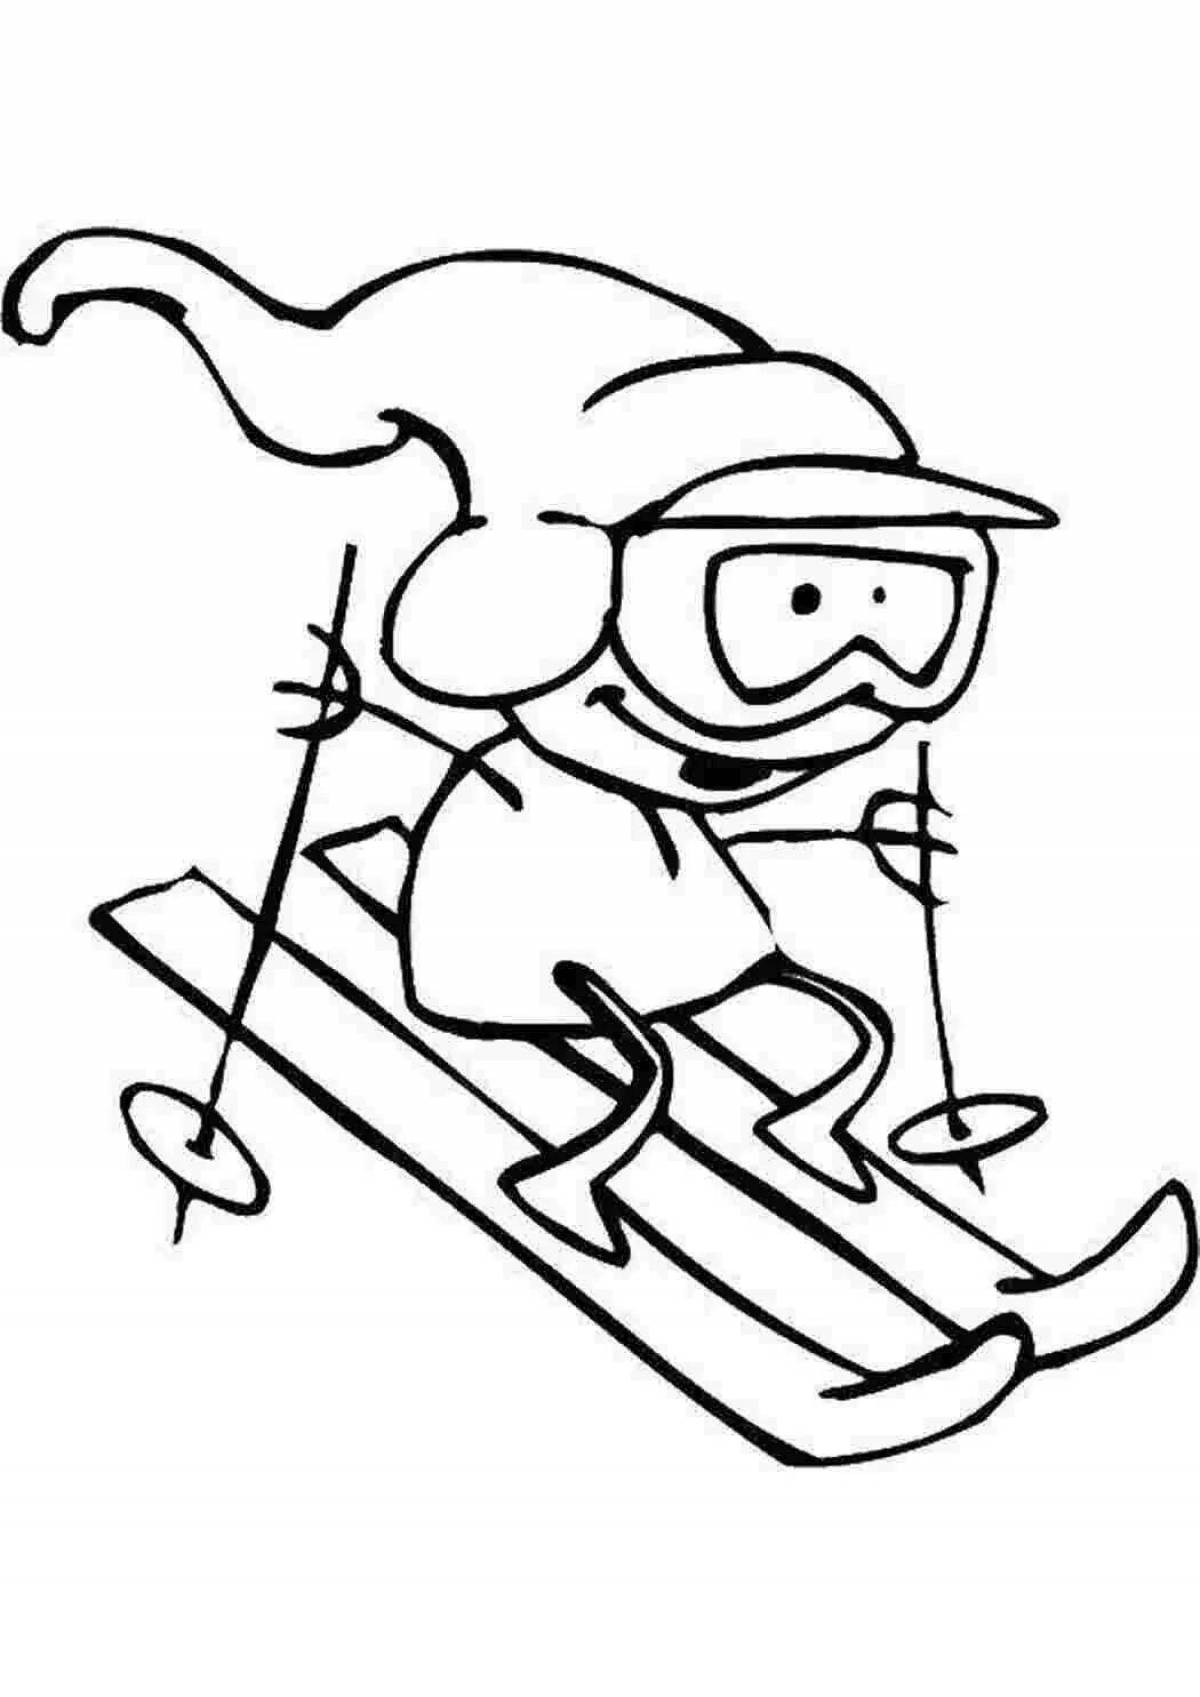 Animated ski racing coloring page